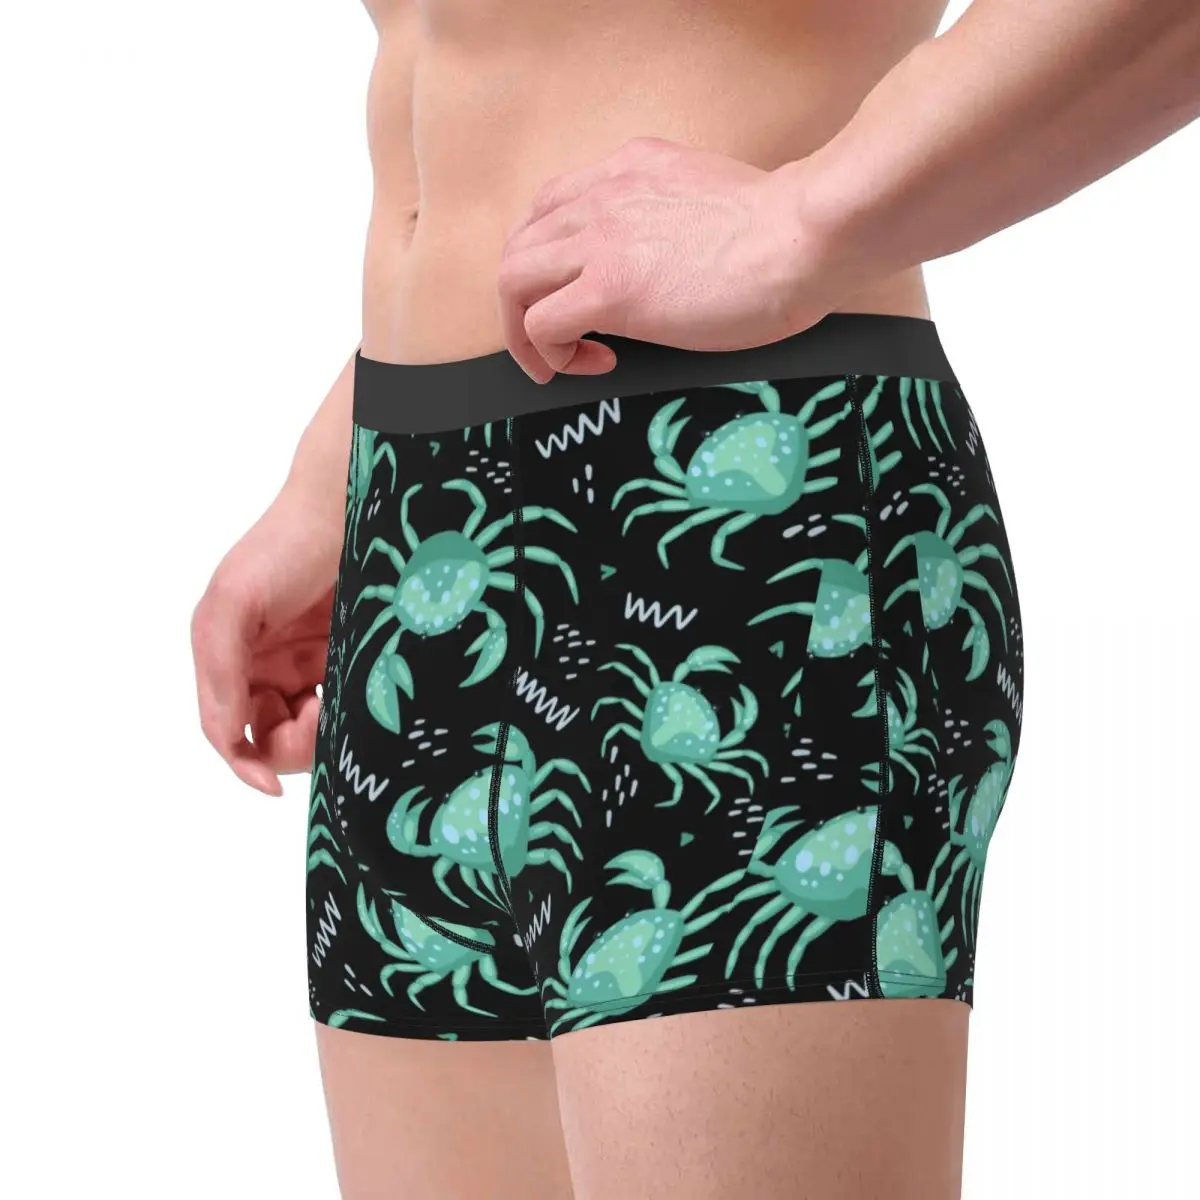 Bonito Caranguejos do mar Estrela do Mar Animais de Homens de Cueca Boxer Shorts, Cuecas Humor Poliéster Cuecas para Homme Plus Size